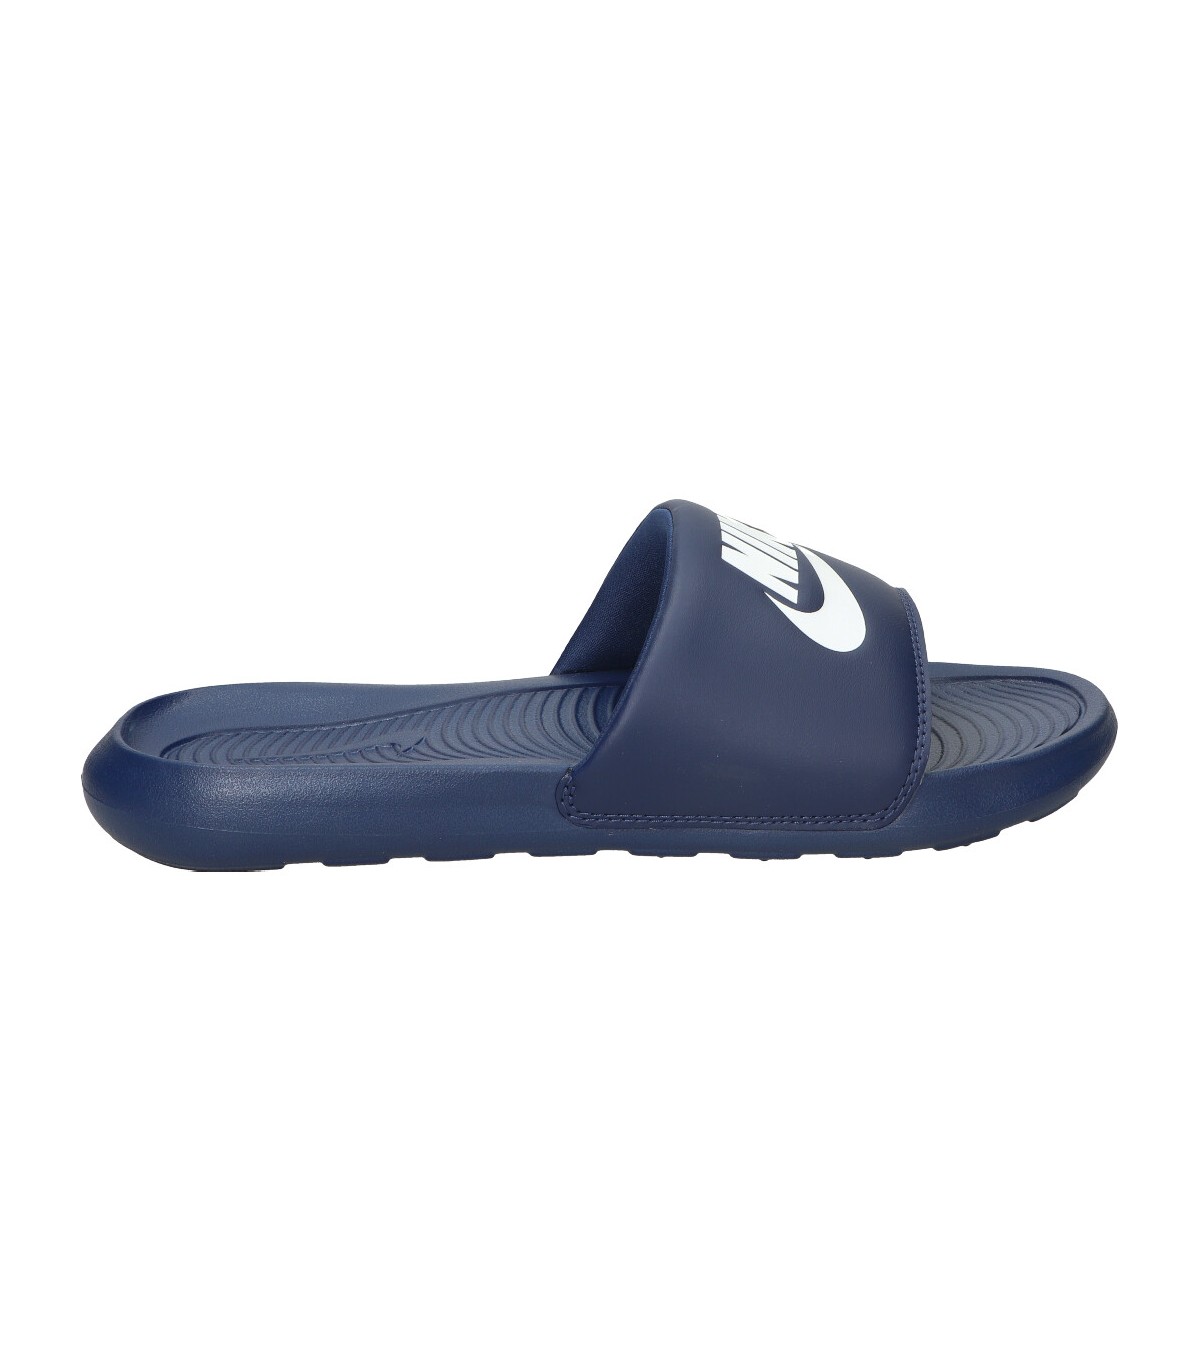 Atento Regan Equipar Chanclas azul marinas para hombre Nike Victori online en MEGACALZADO